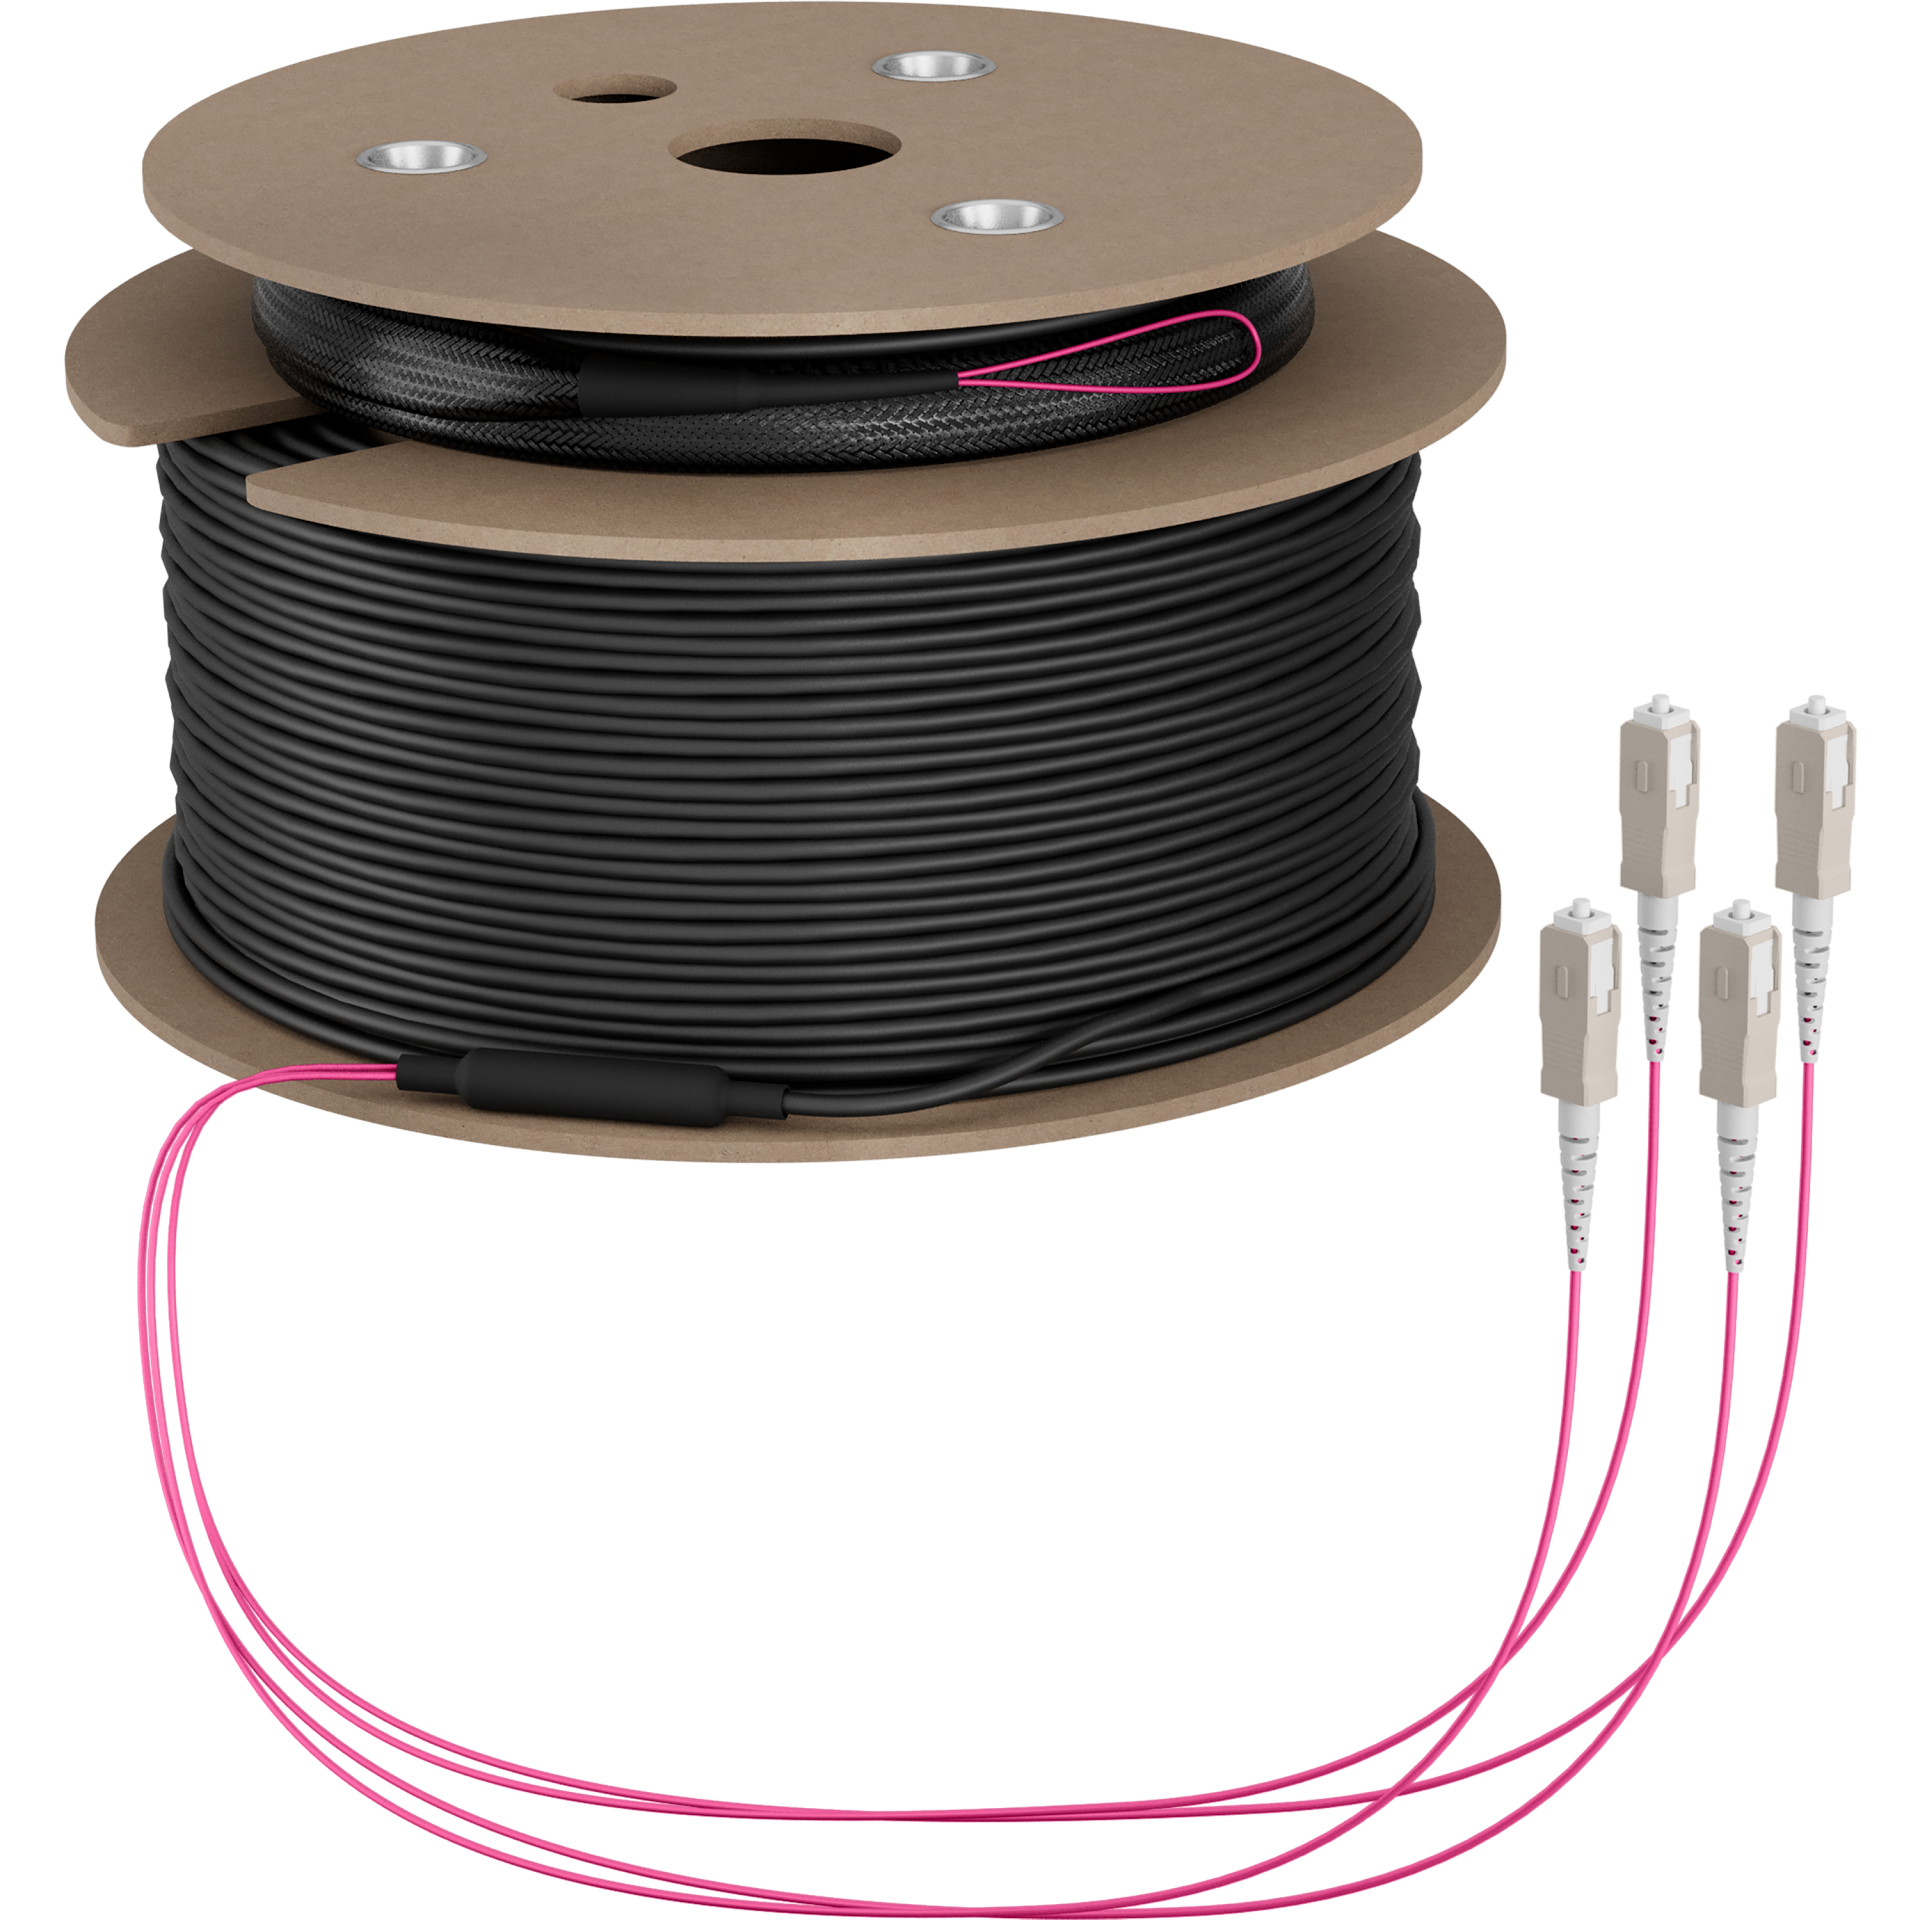 Trunk cable U-DQ(ZN)BH OM4 4G (1x4) SC-SC,50m Dca LSZH